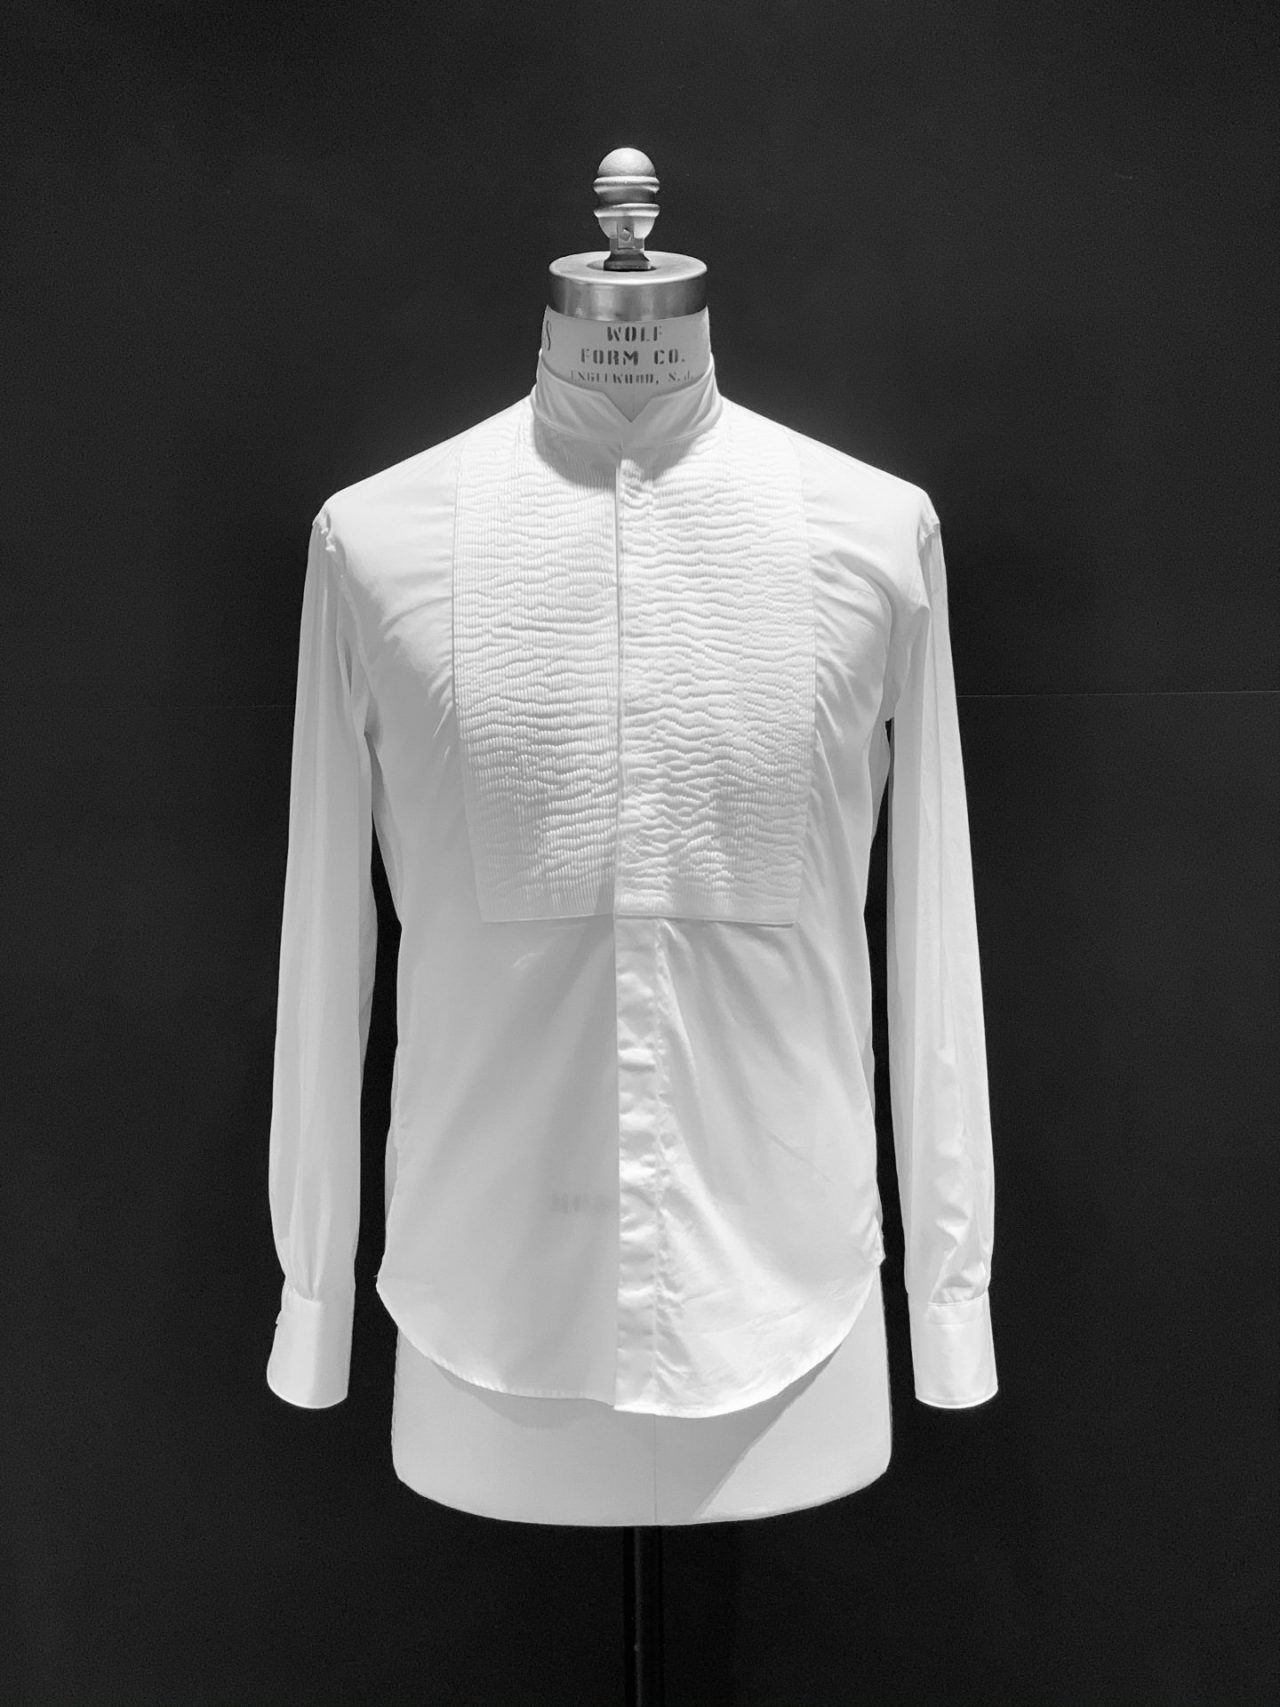 タキシードをお取り扱いする大阪のTHE TREAT DRESSING（ザ・トリートドレッシング）OSAKA店がセレクトしたフランスのドレスシャツブランド、ブリエンヌ パリ・ディス（Bourrienne ParisX）は細かなプリーツが施された上品なフランス製の白のドレスシャツです。